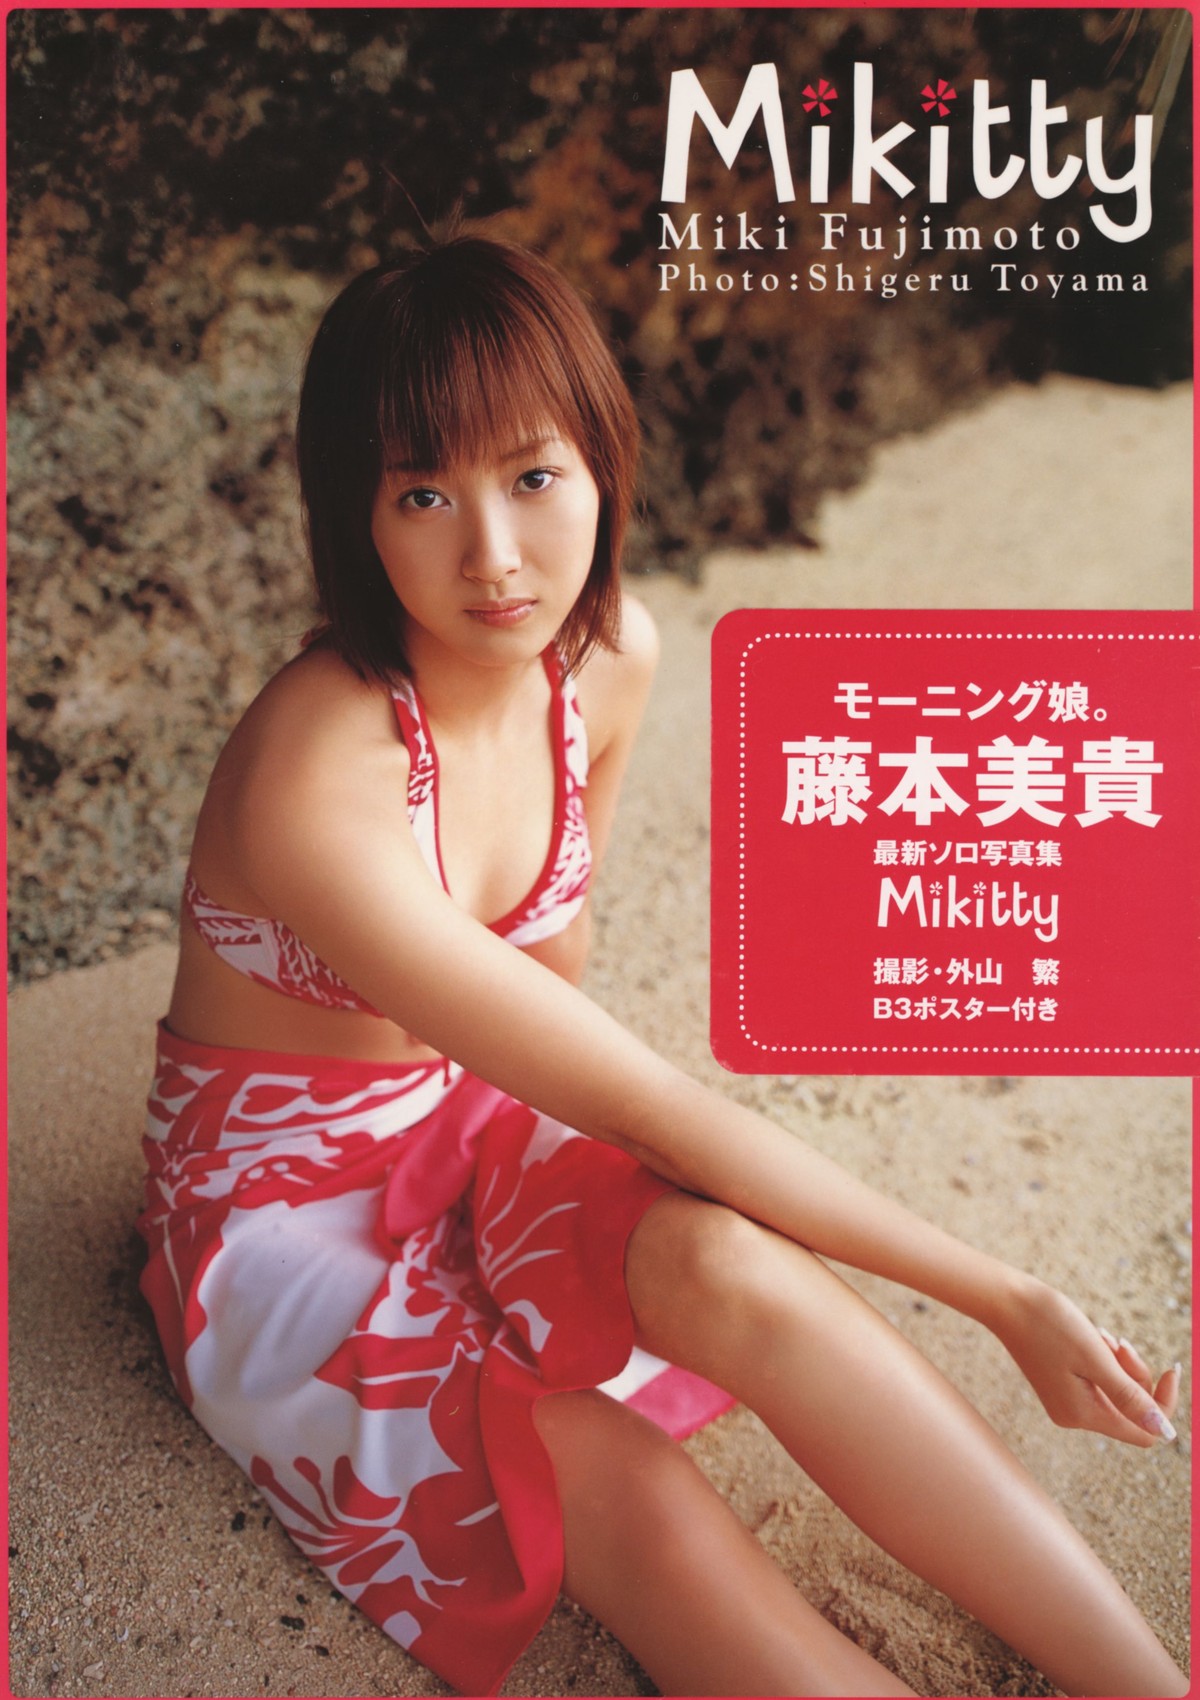 Photobook Miki Fujimoto 藤本美貴 Mikitty 0001 0895223552.jpg